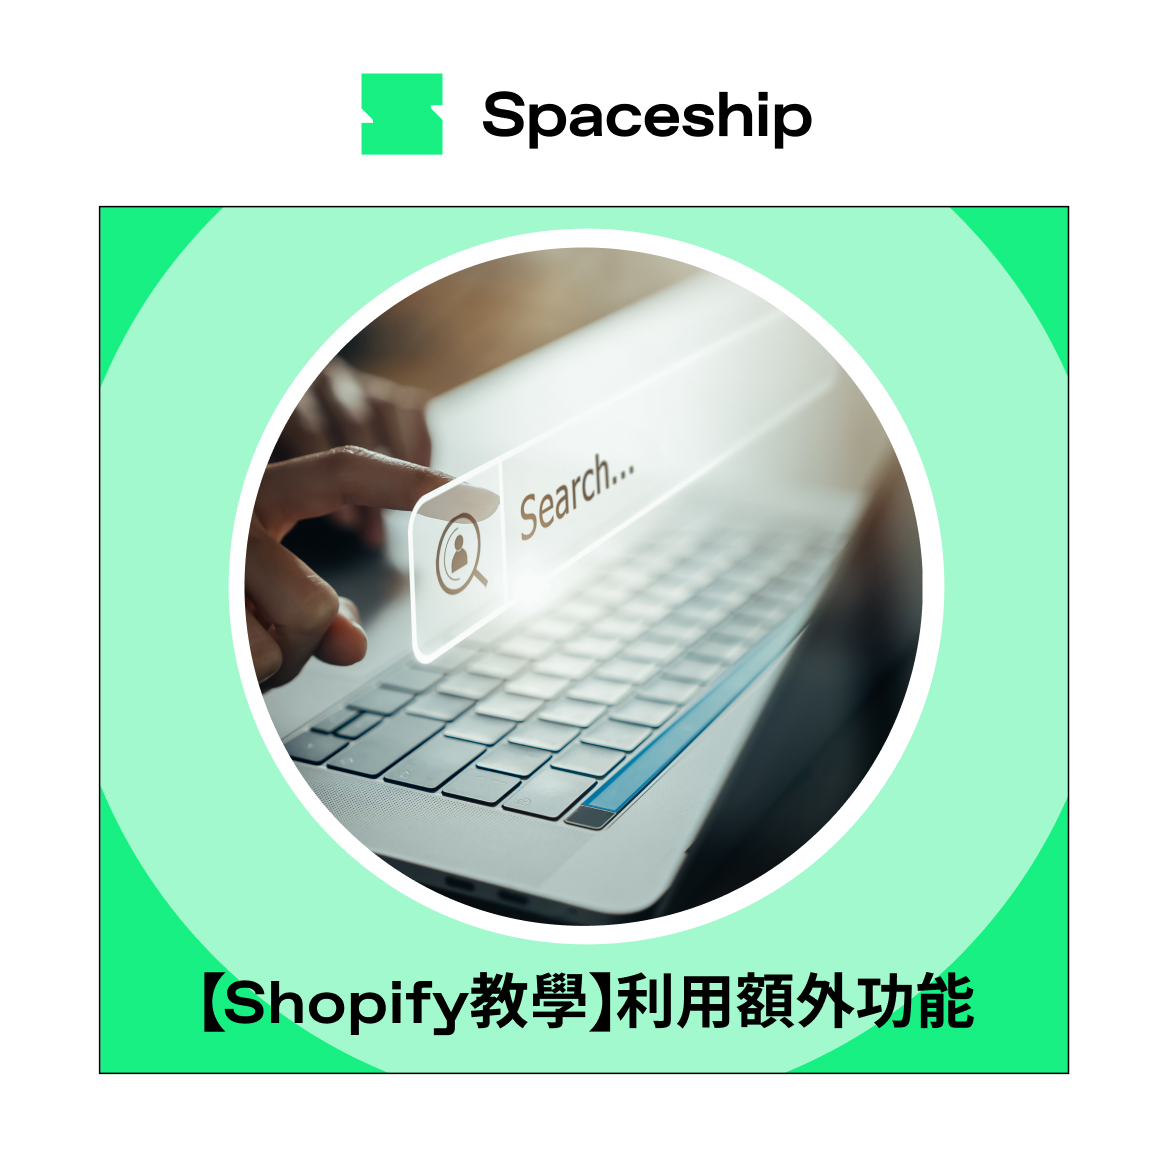 【Shopify教學】利用額外6功能 零成本創造更多訂單機會